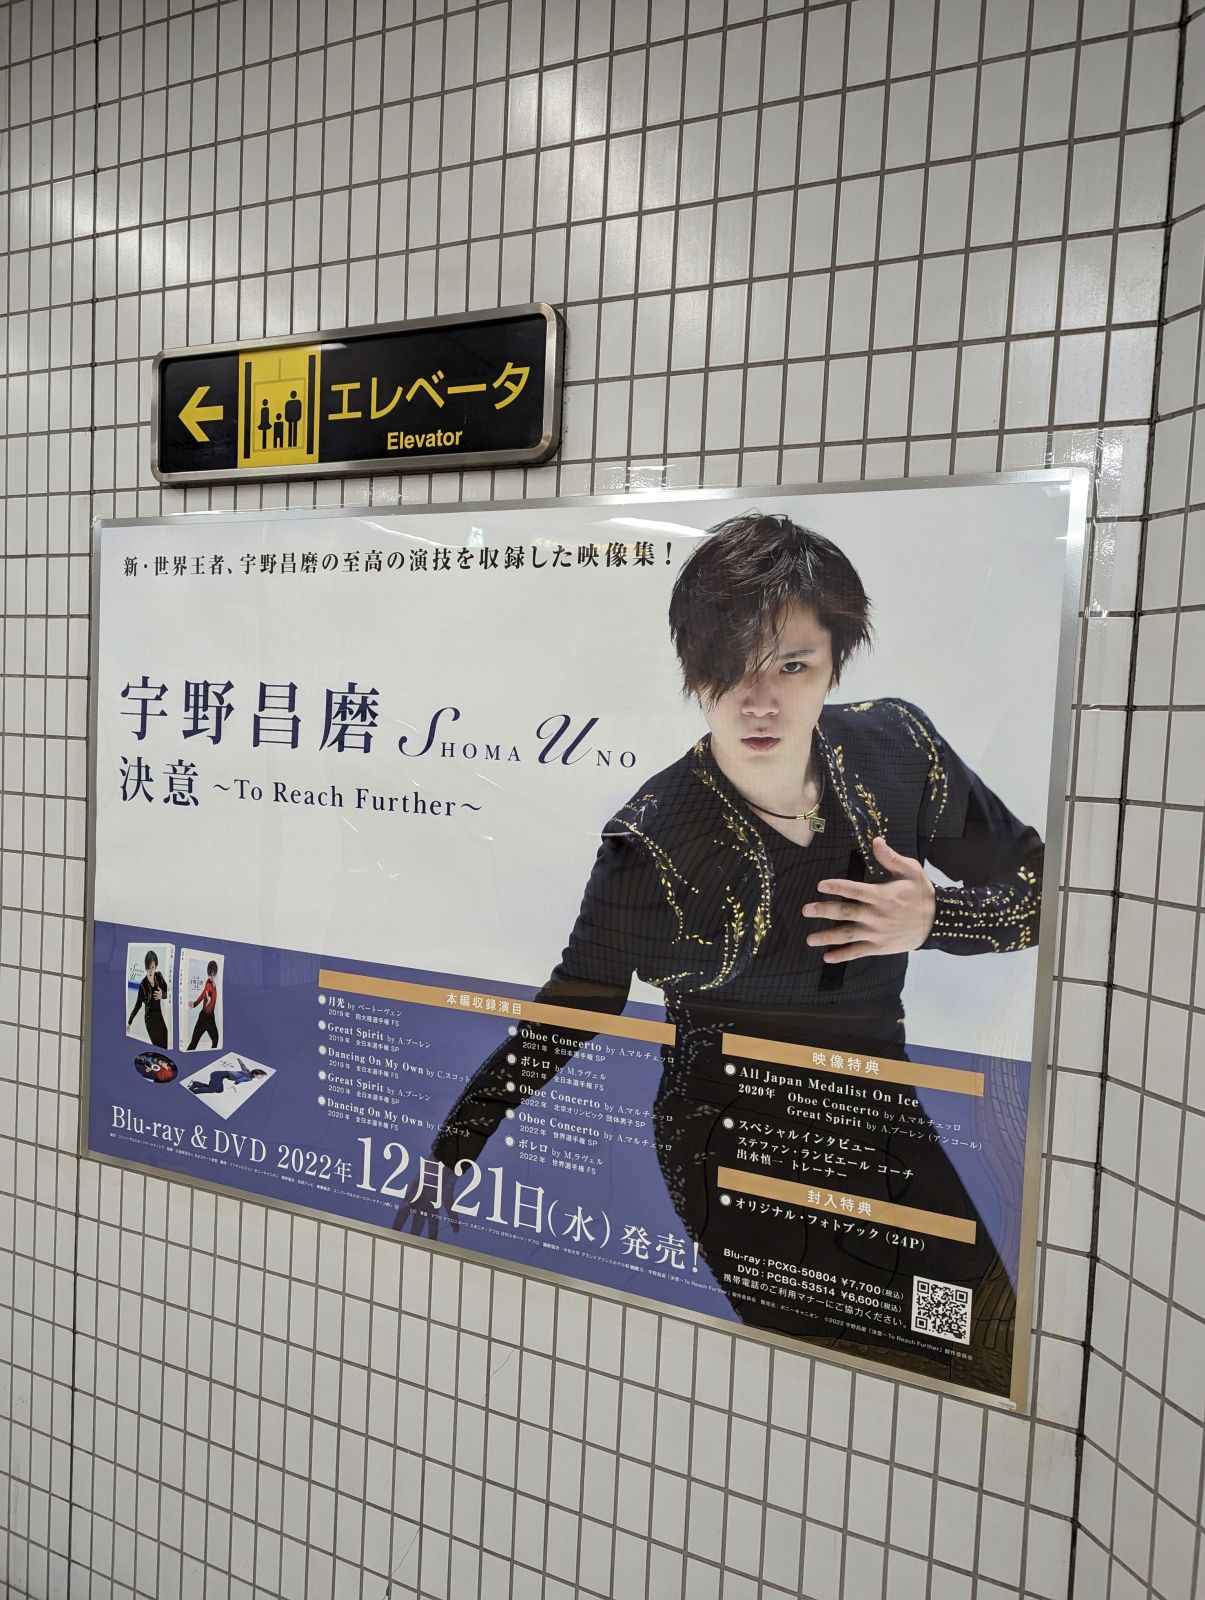 駅の広告ポスター